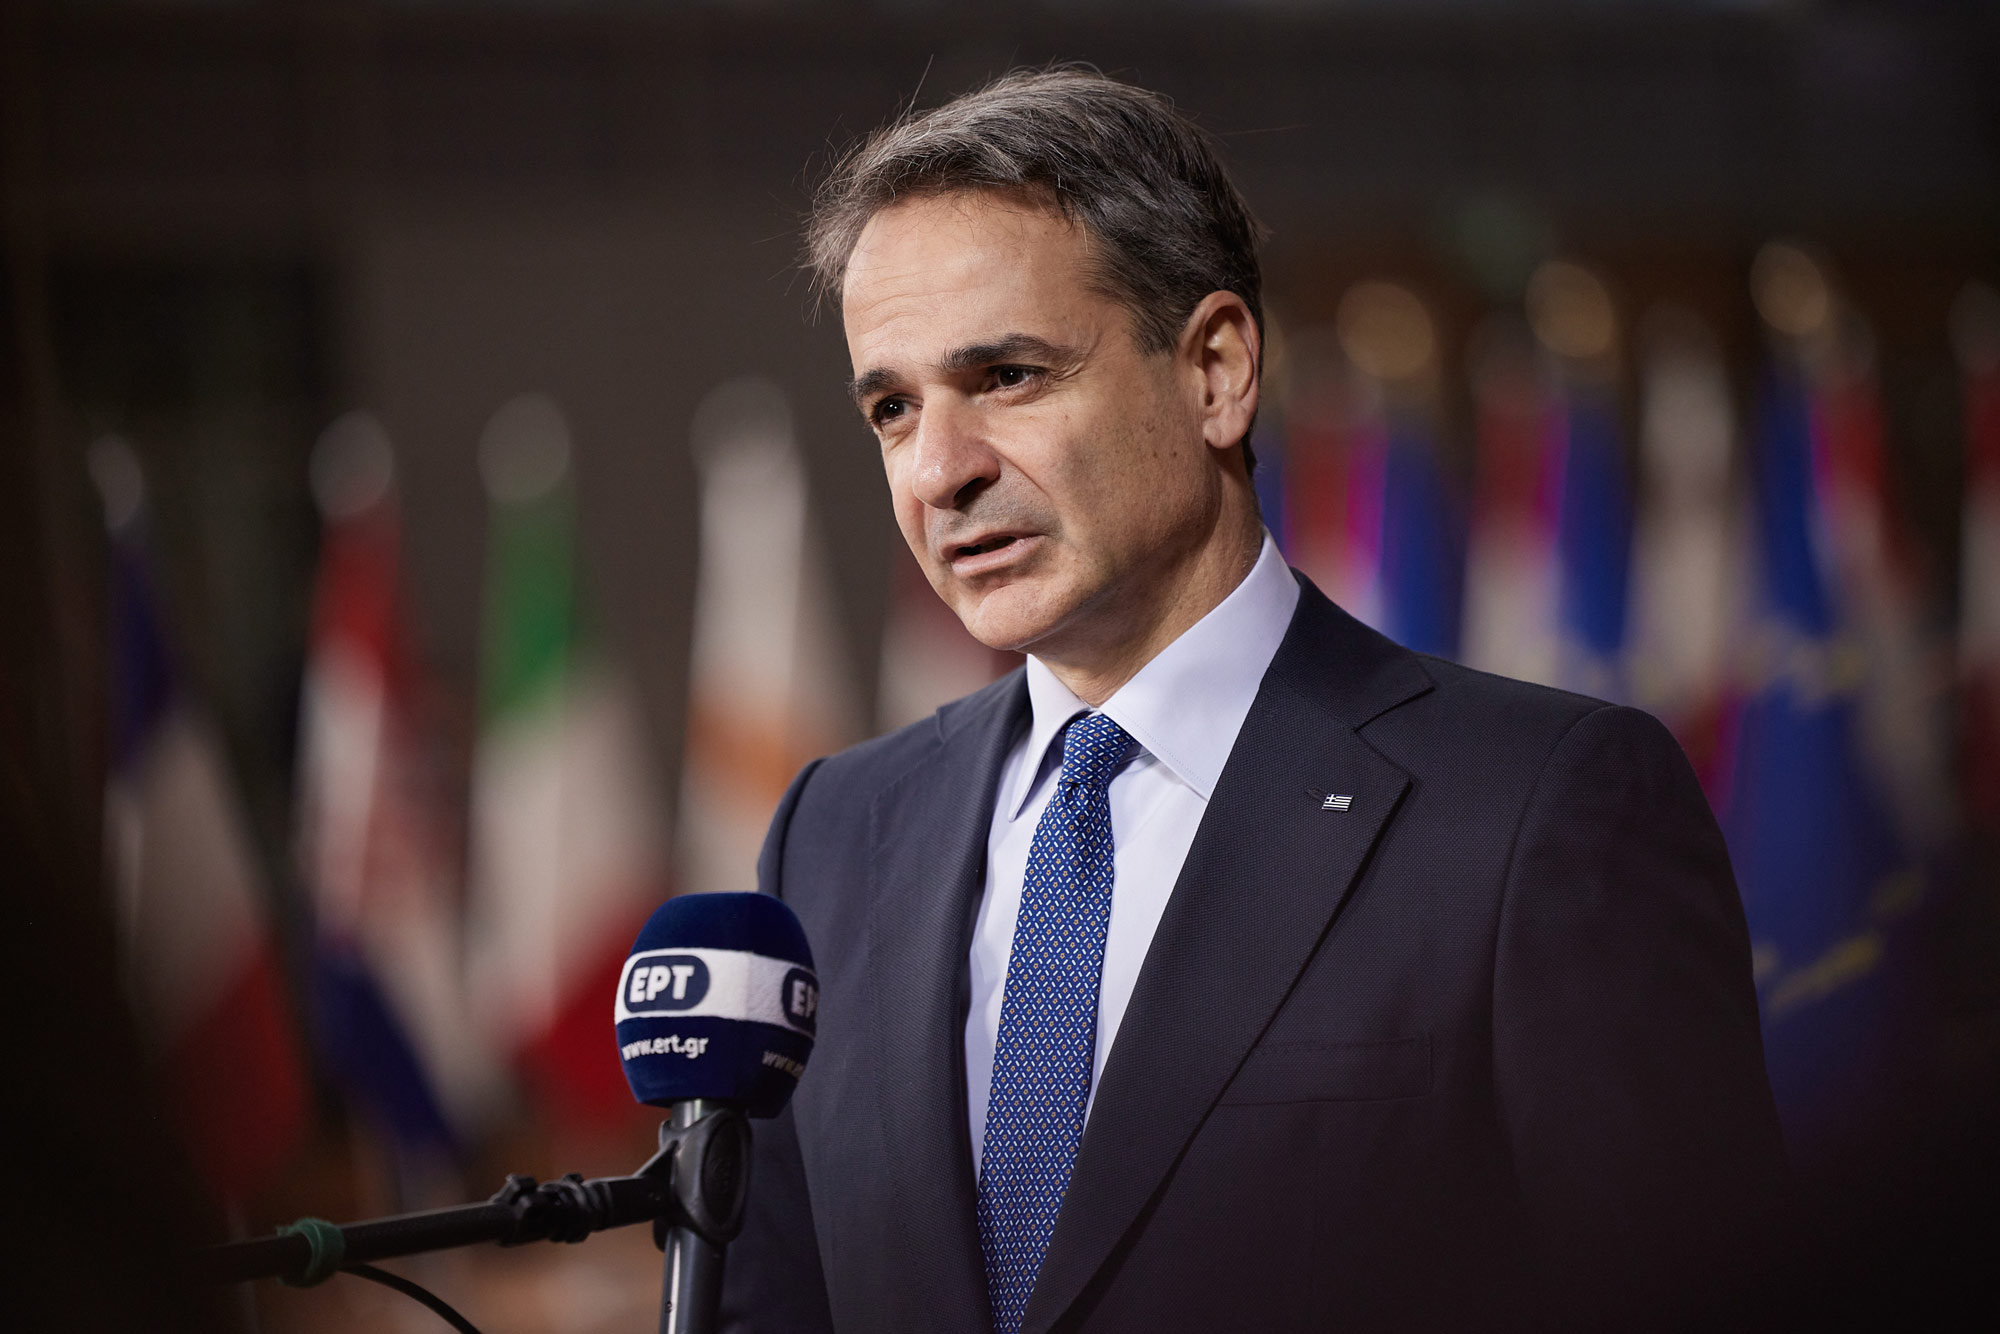 Σύνοδος Κορυφής στις Βρυξέλλες στη σκιά της ανάφλεξης στη Μέση Ανατολή – Η ατζέντα και οι ελληνικές θέσεις